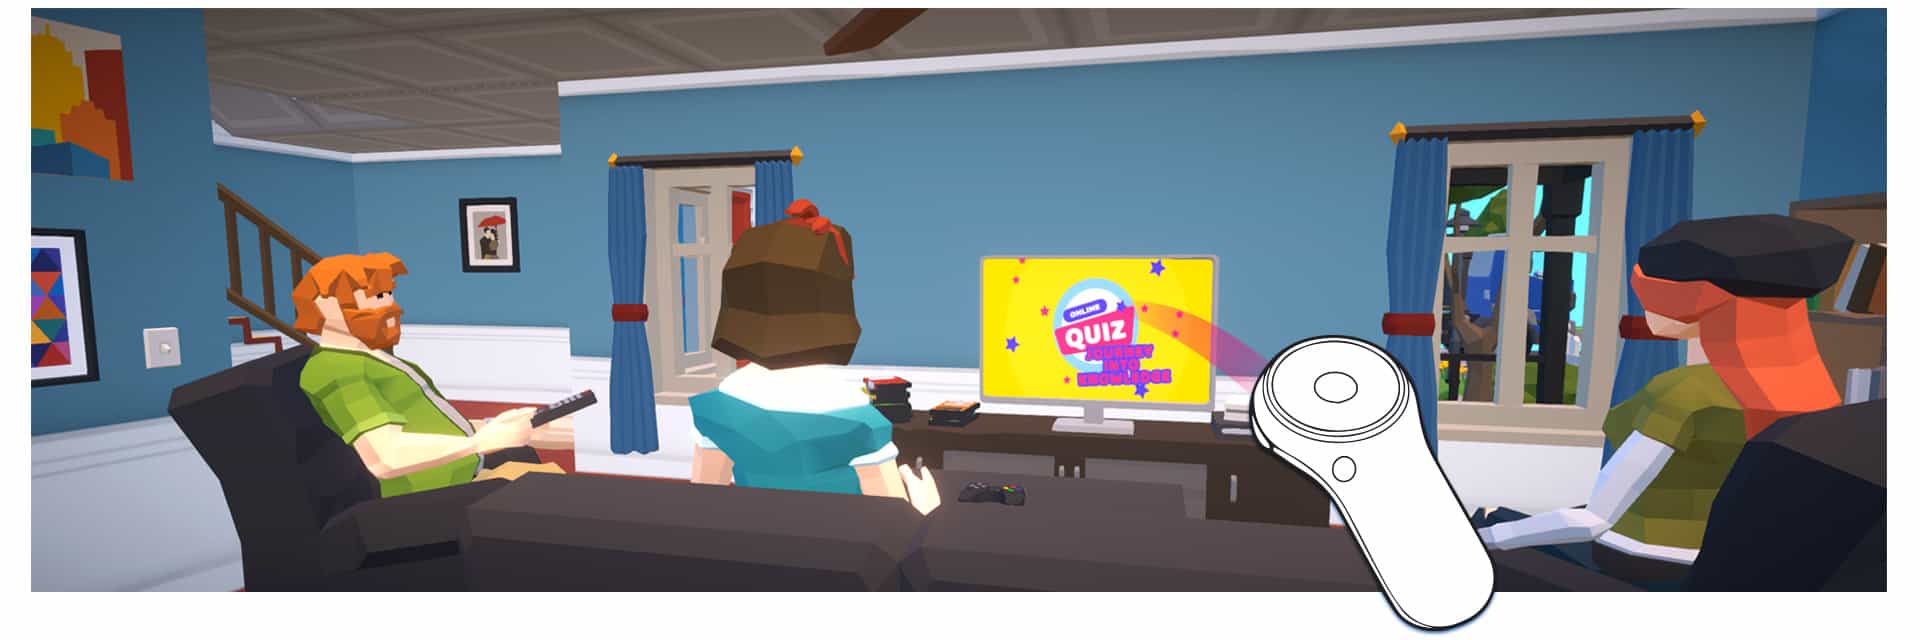 Εικονική Πραγματικότητα (VR) στην Εκπαίδευση